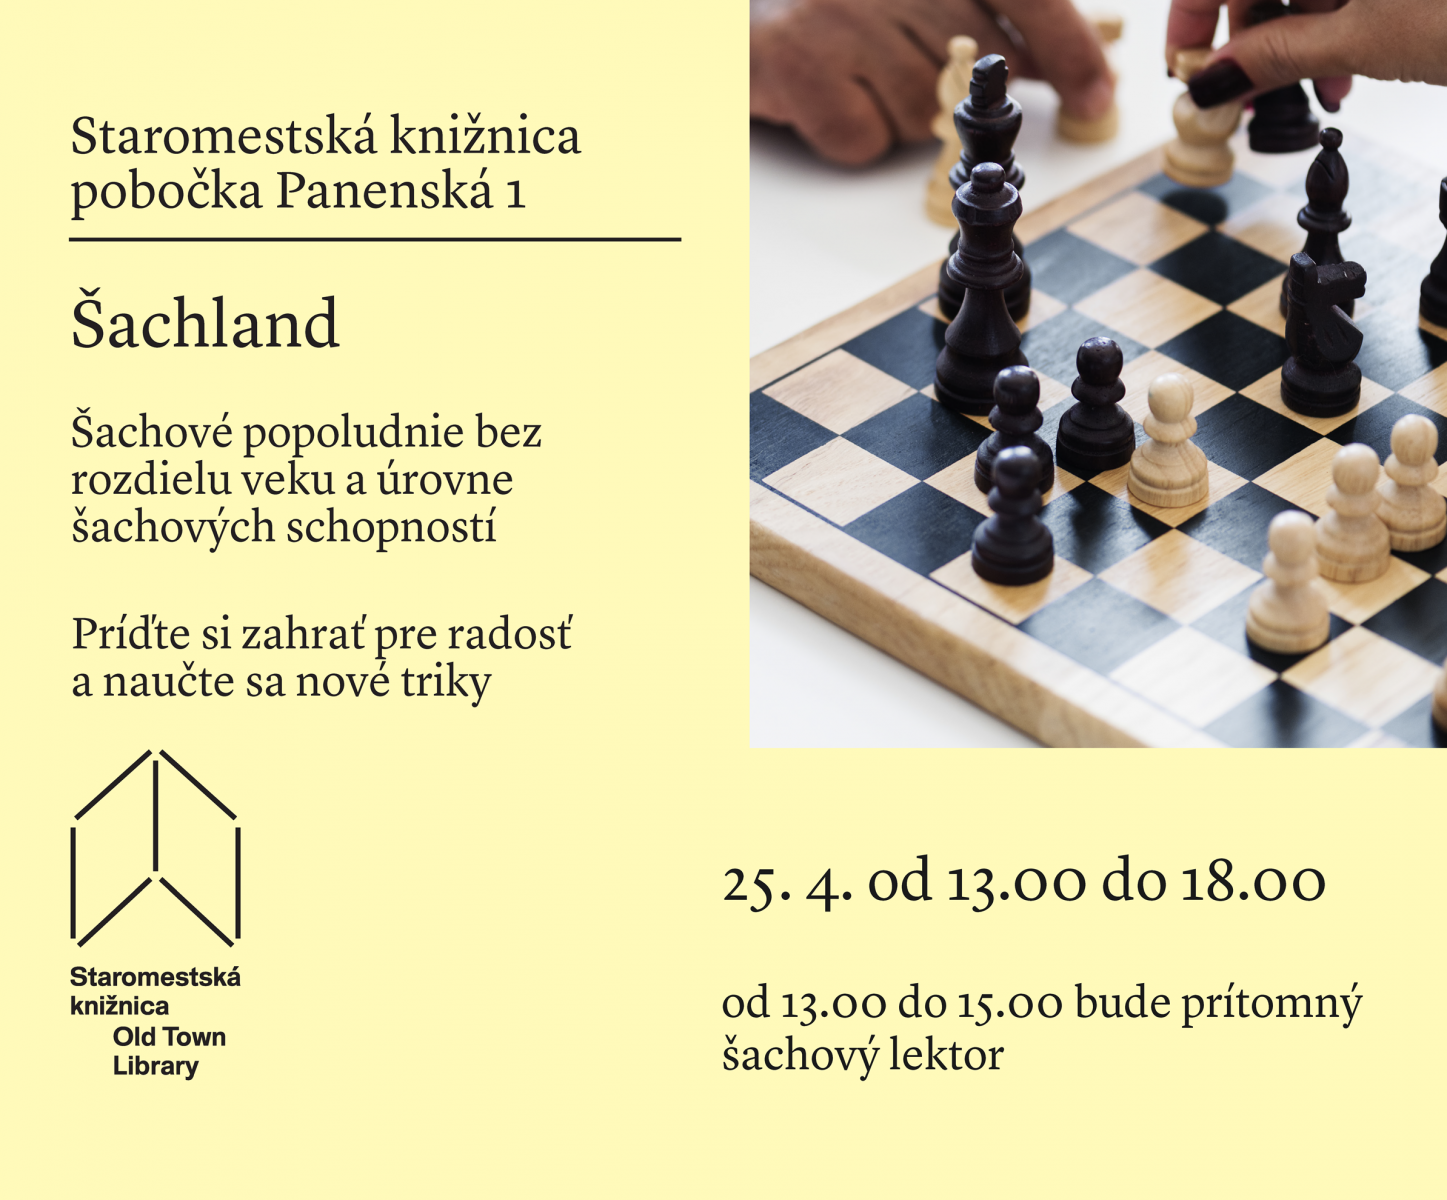 Šachové popoludnie - 25. 4. od 13. 00 do 18.00 na Panenskej 1